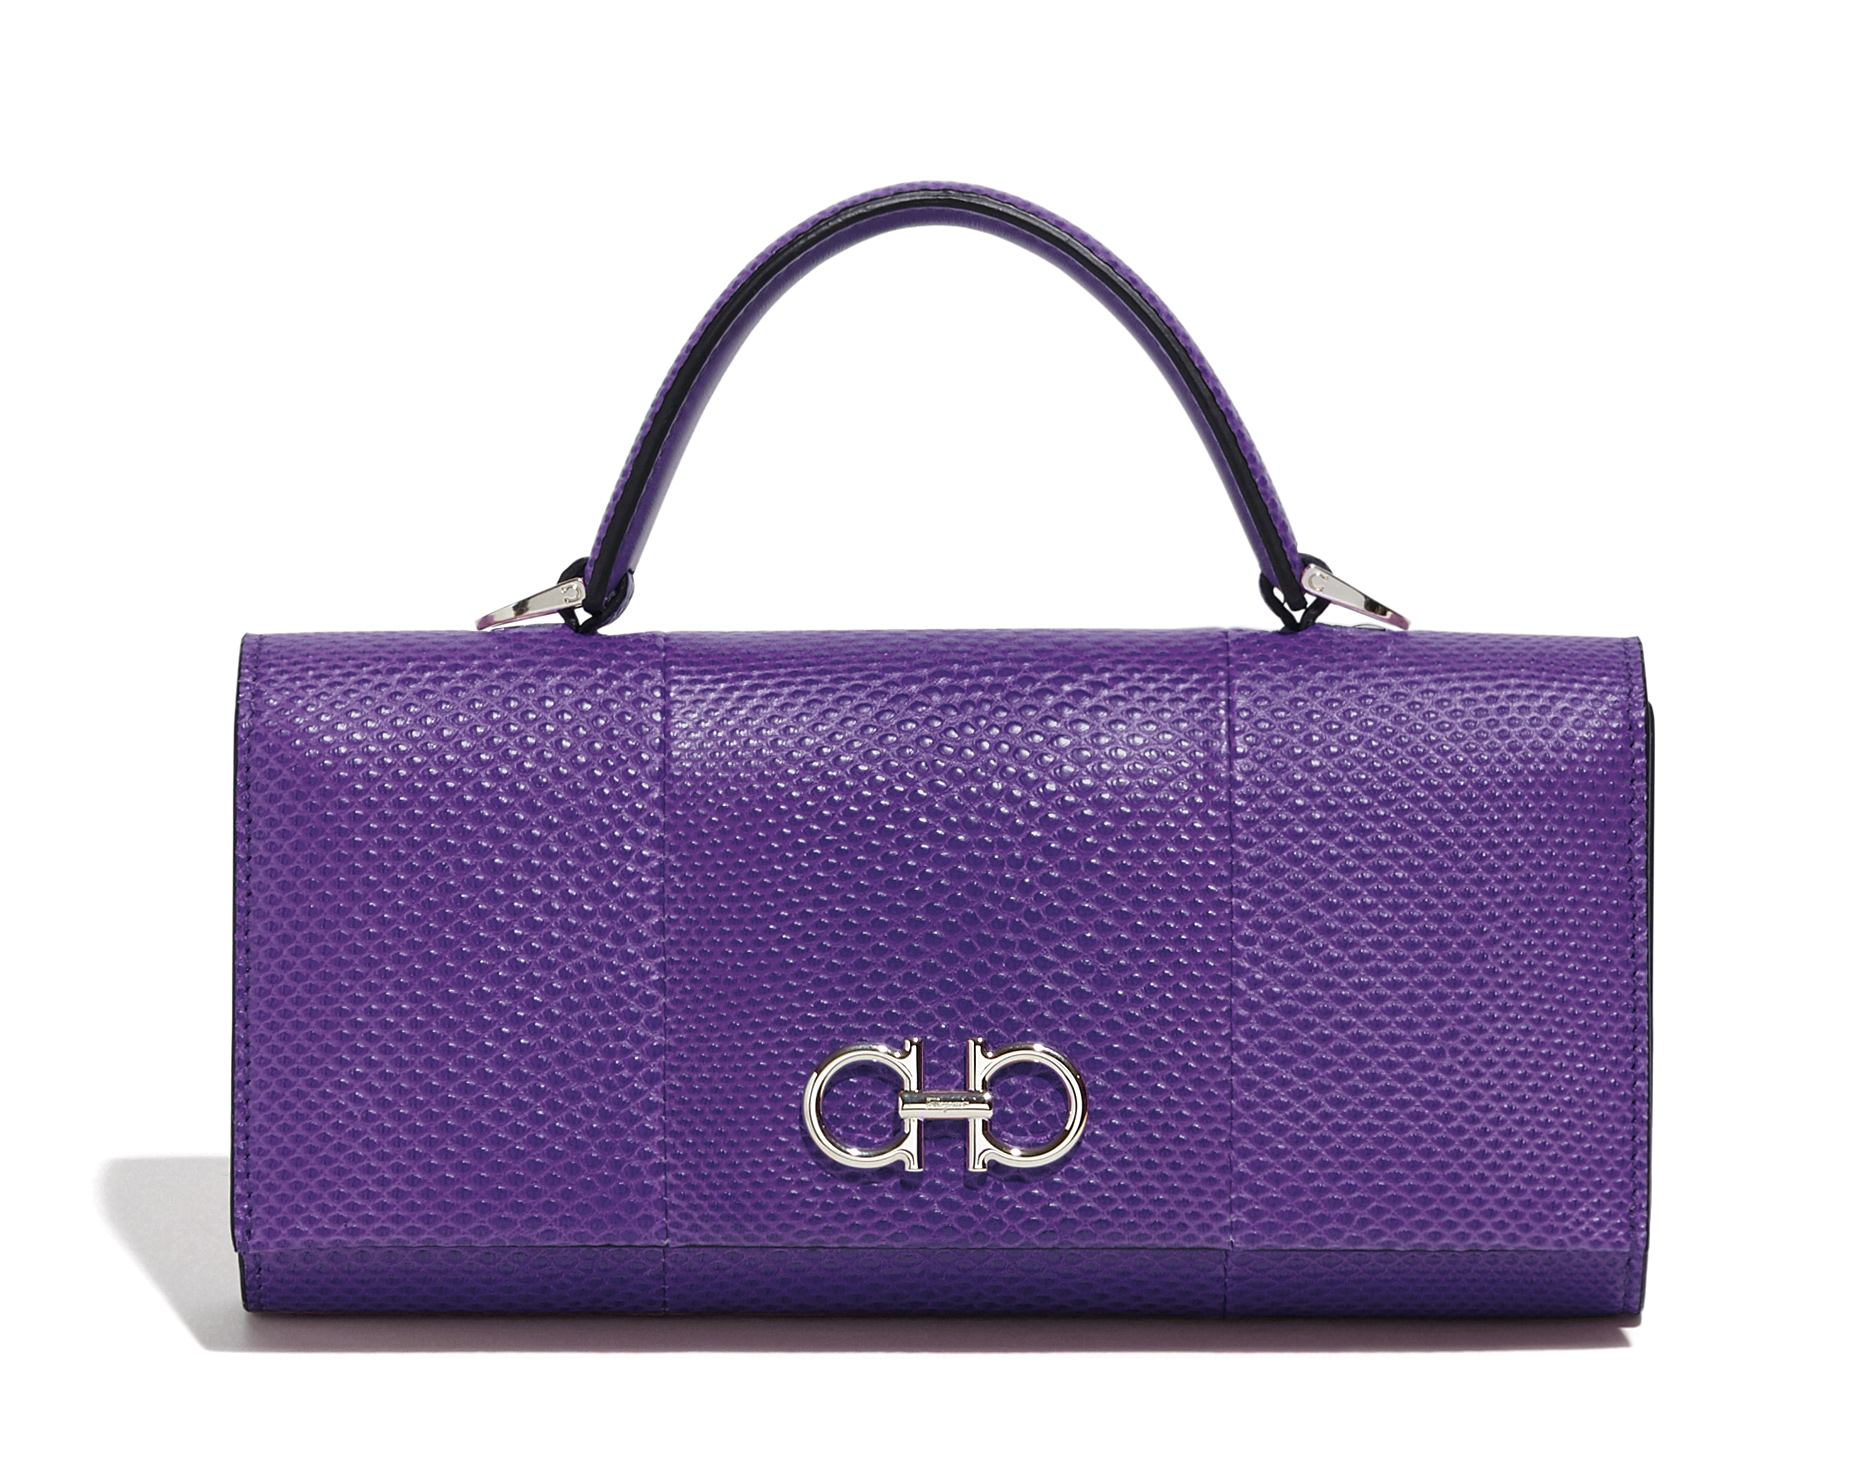 mini shoulder bag by Salvatore Ferragamo in purple